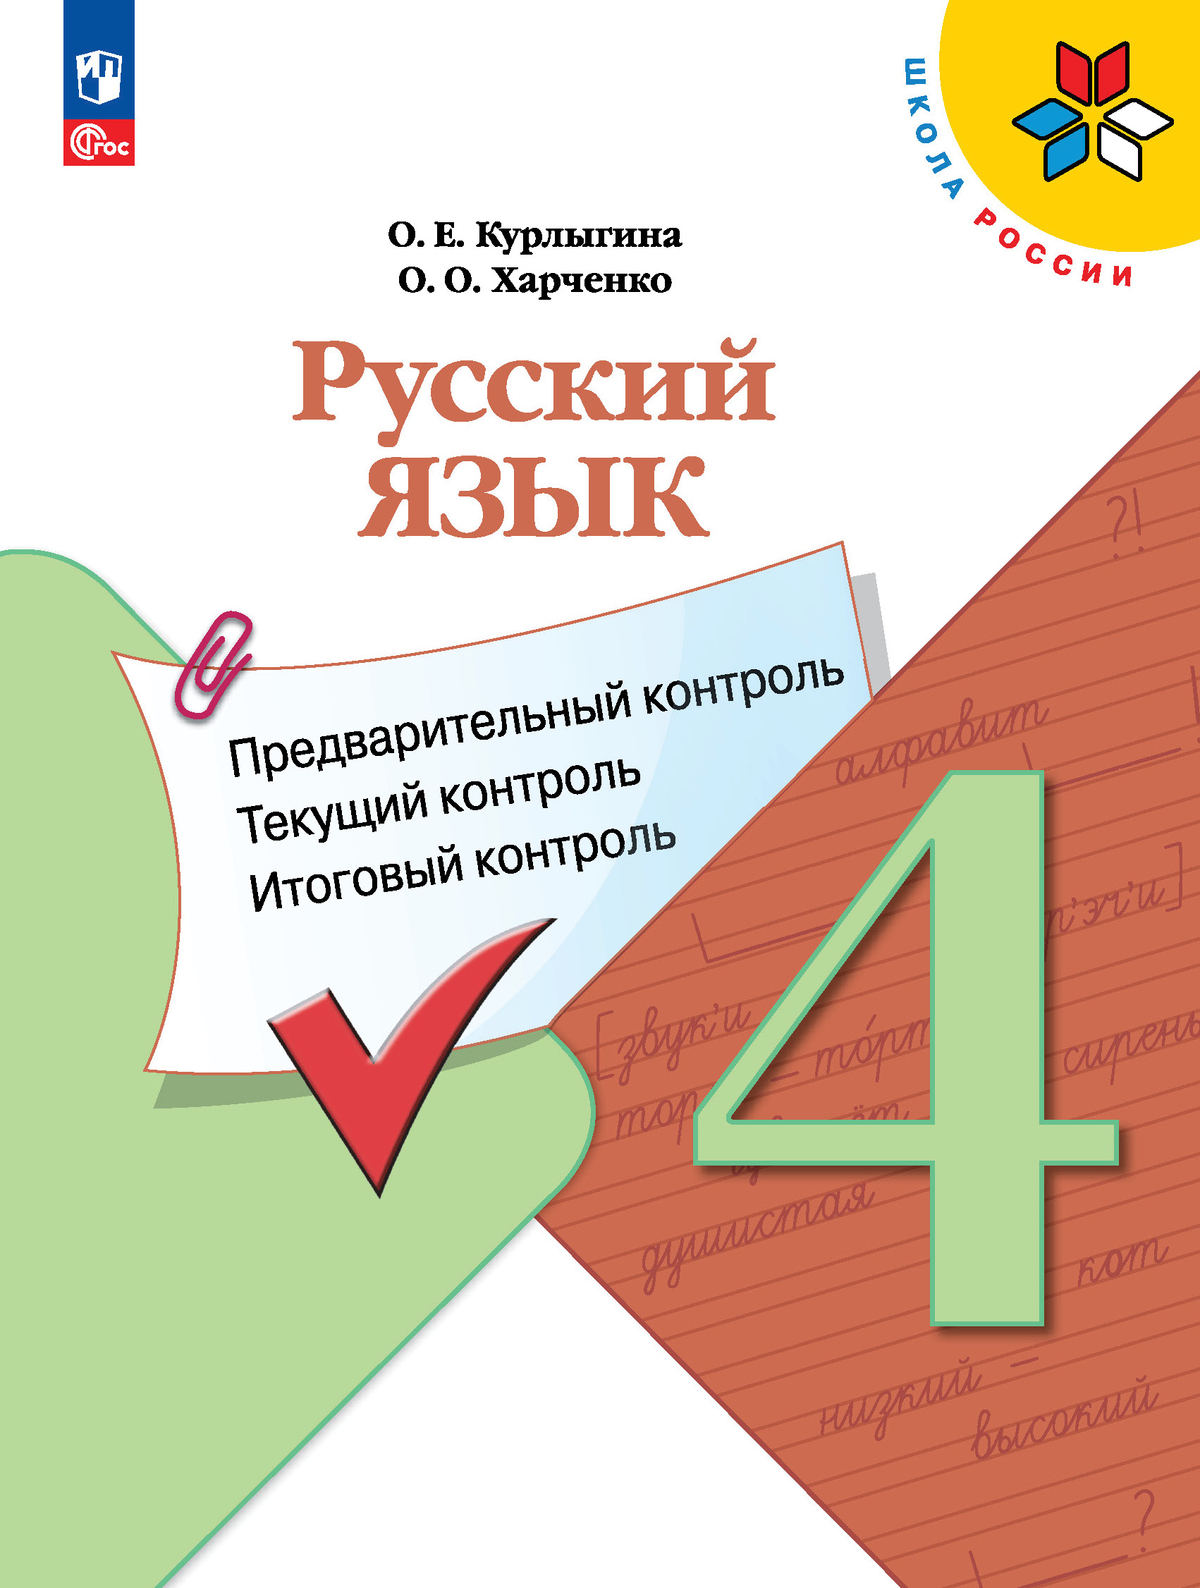 Русский язык: предварительный контроль, текущий контроль, итоговый контроль. 4 класс 1